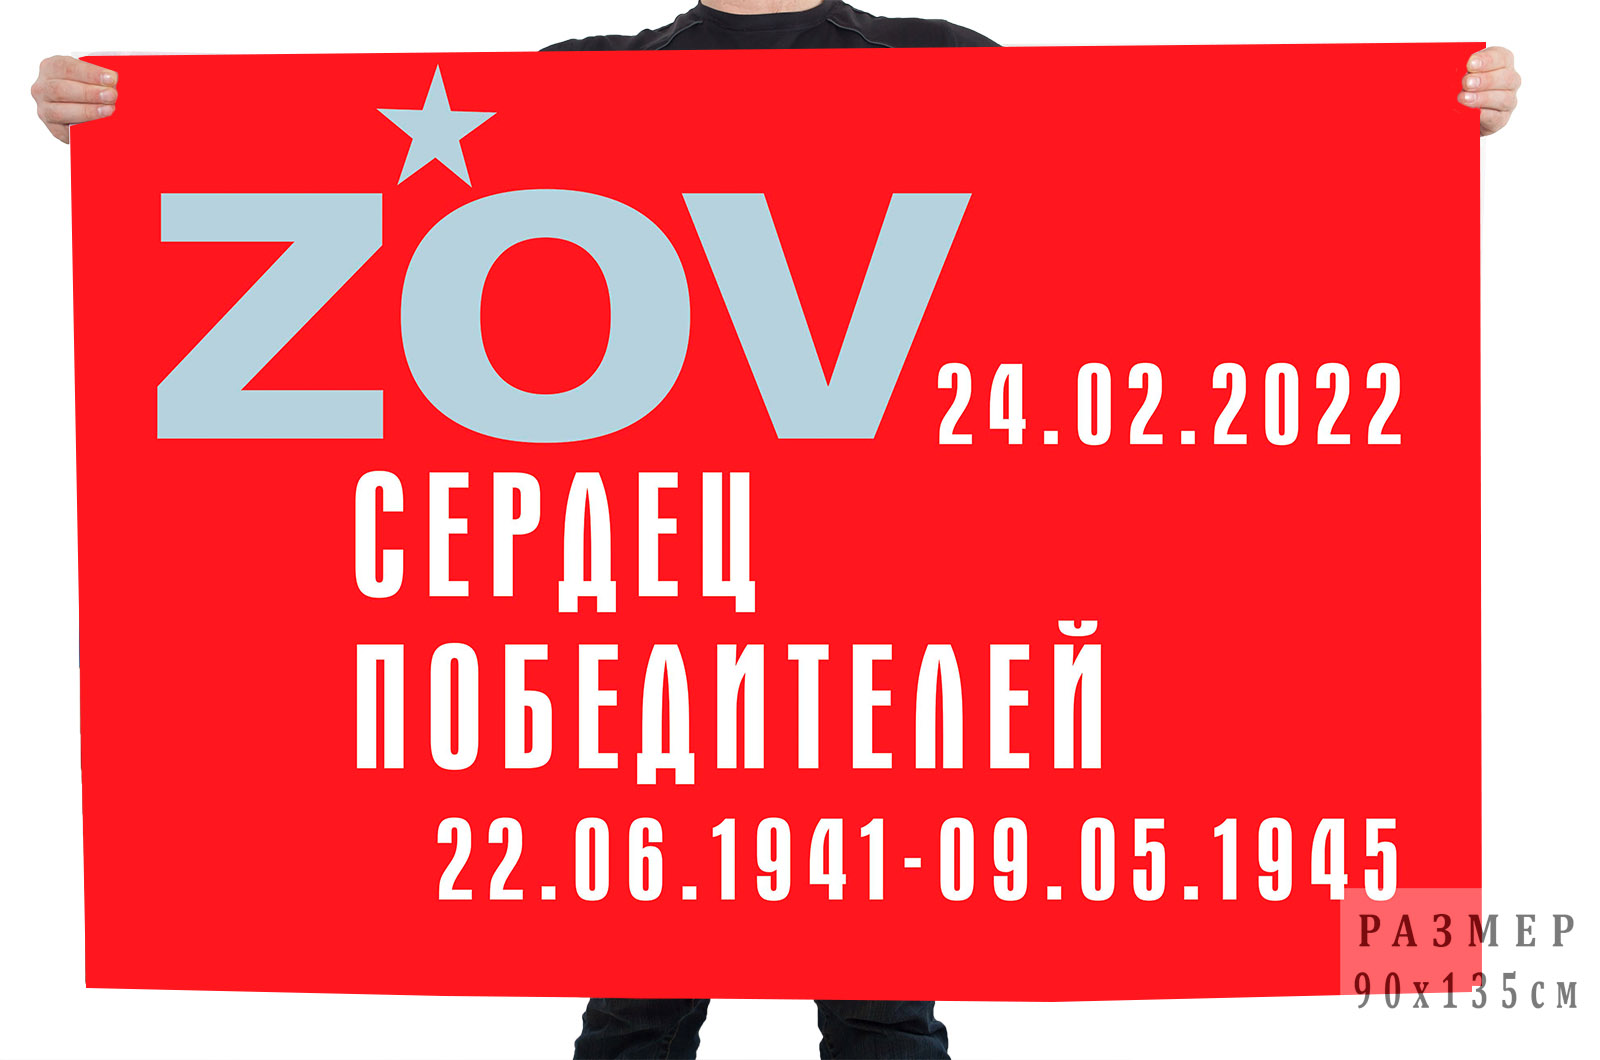 Флаг "ZOV сердец победителей"